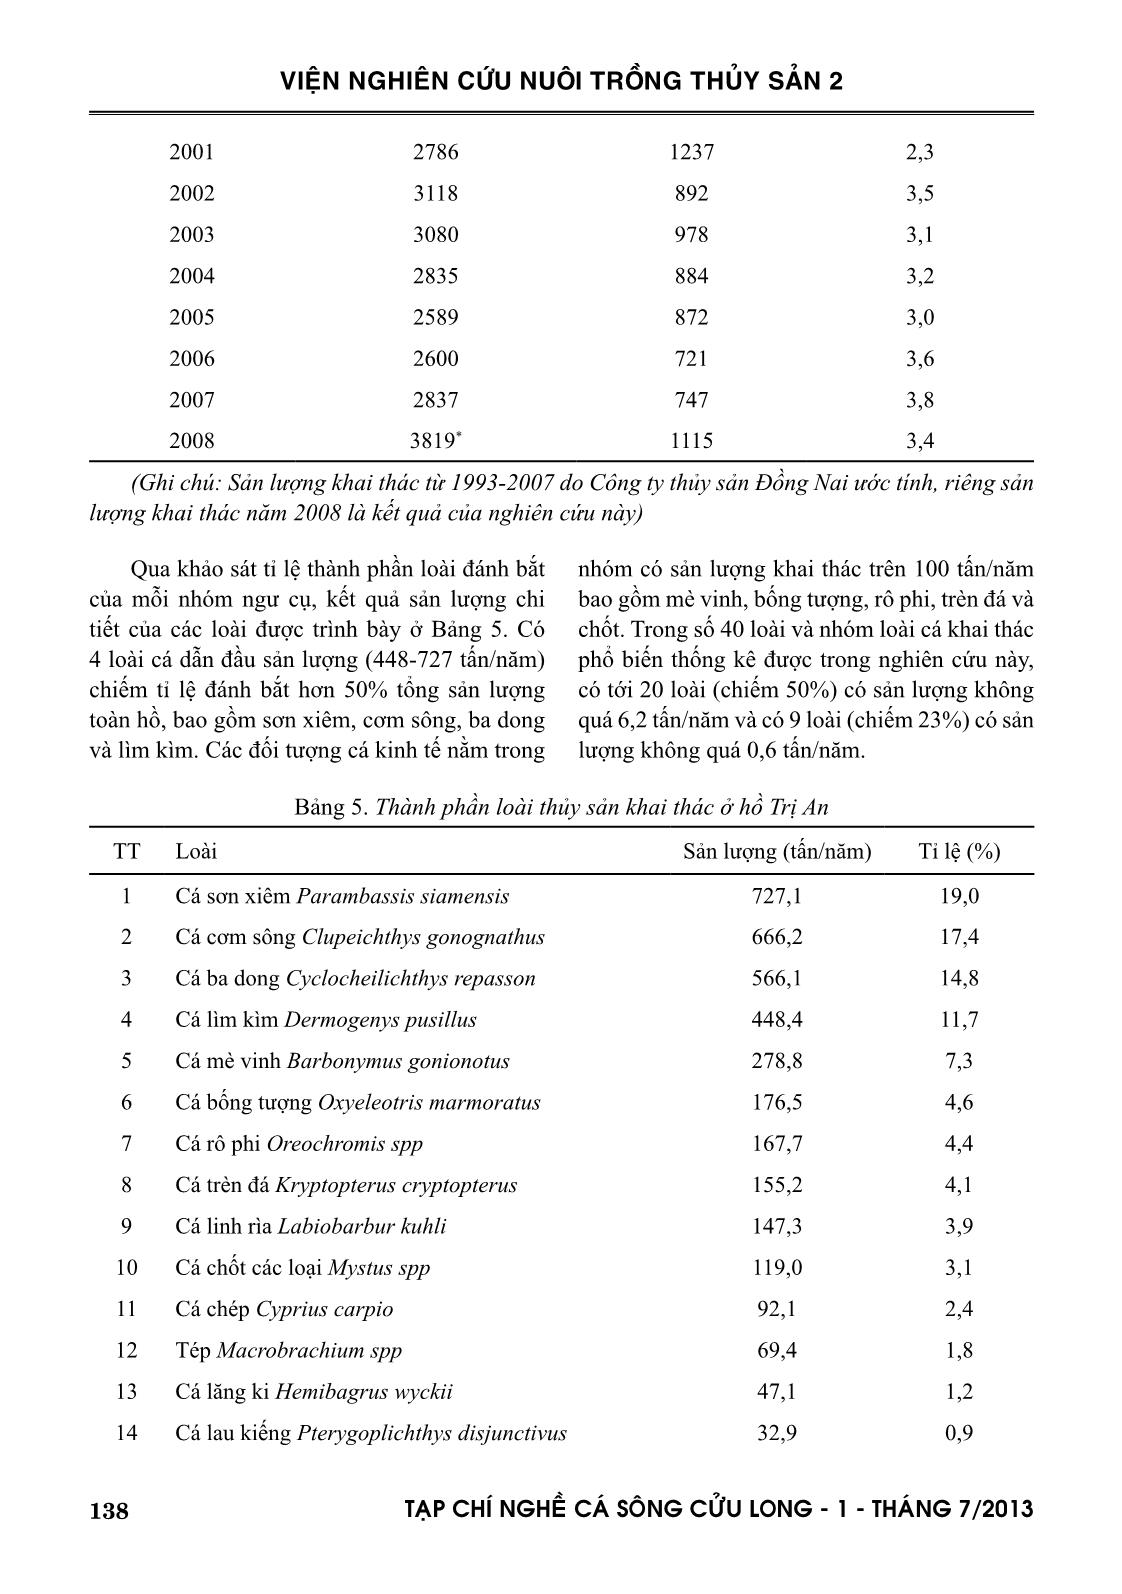 Đánh giá sản lượng thủy sản khai thác qua khảo sát ngư cụ và thành phần loài cá khai thác ở hồ Trị An trang 6